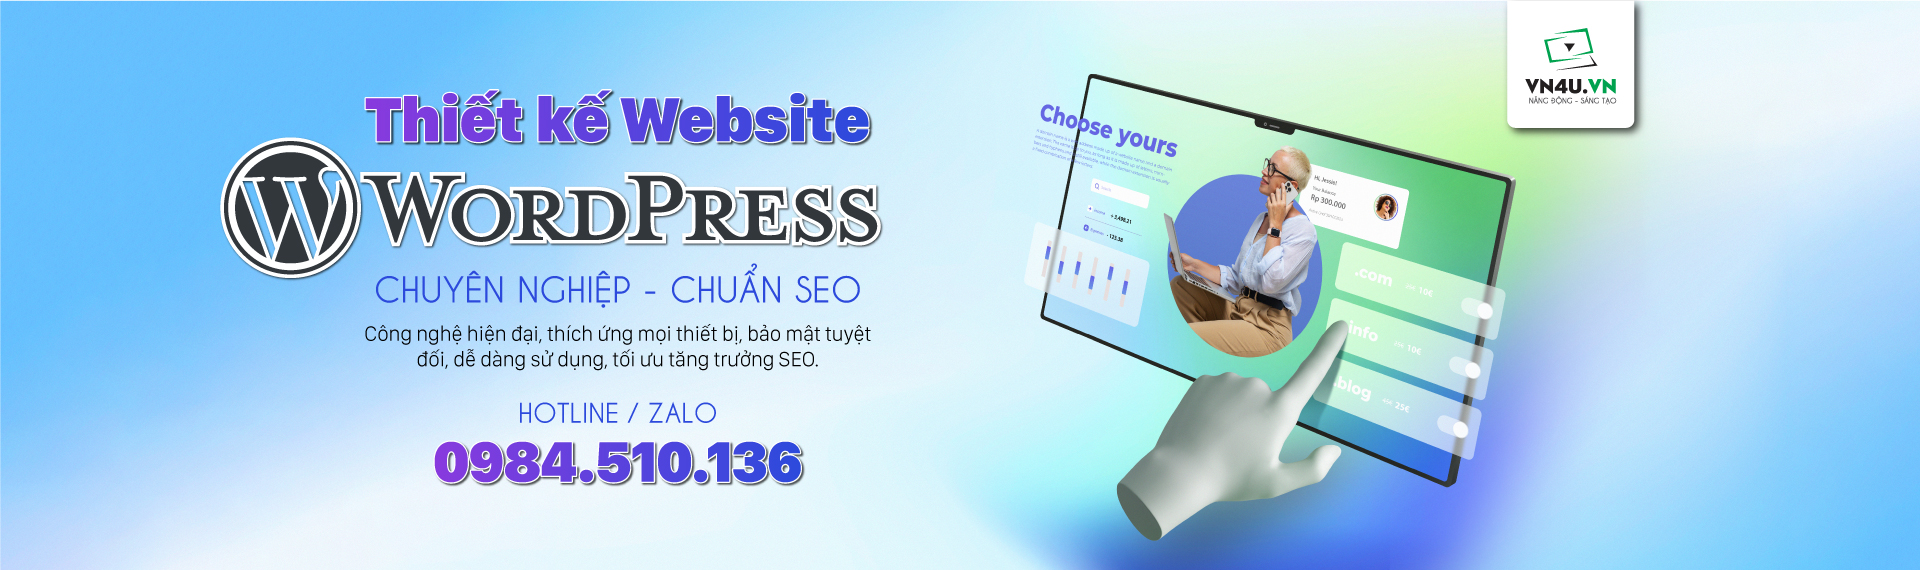 Thiết kế website tại Tuyên Quang